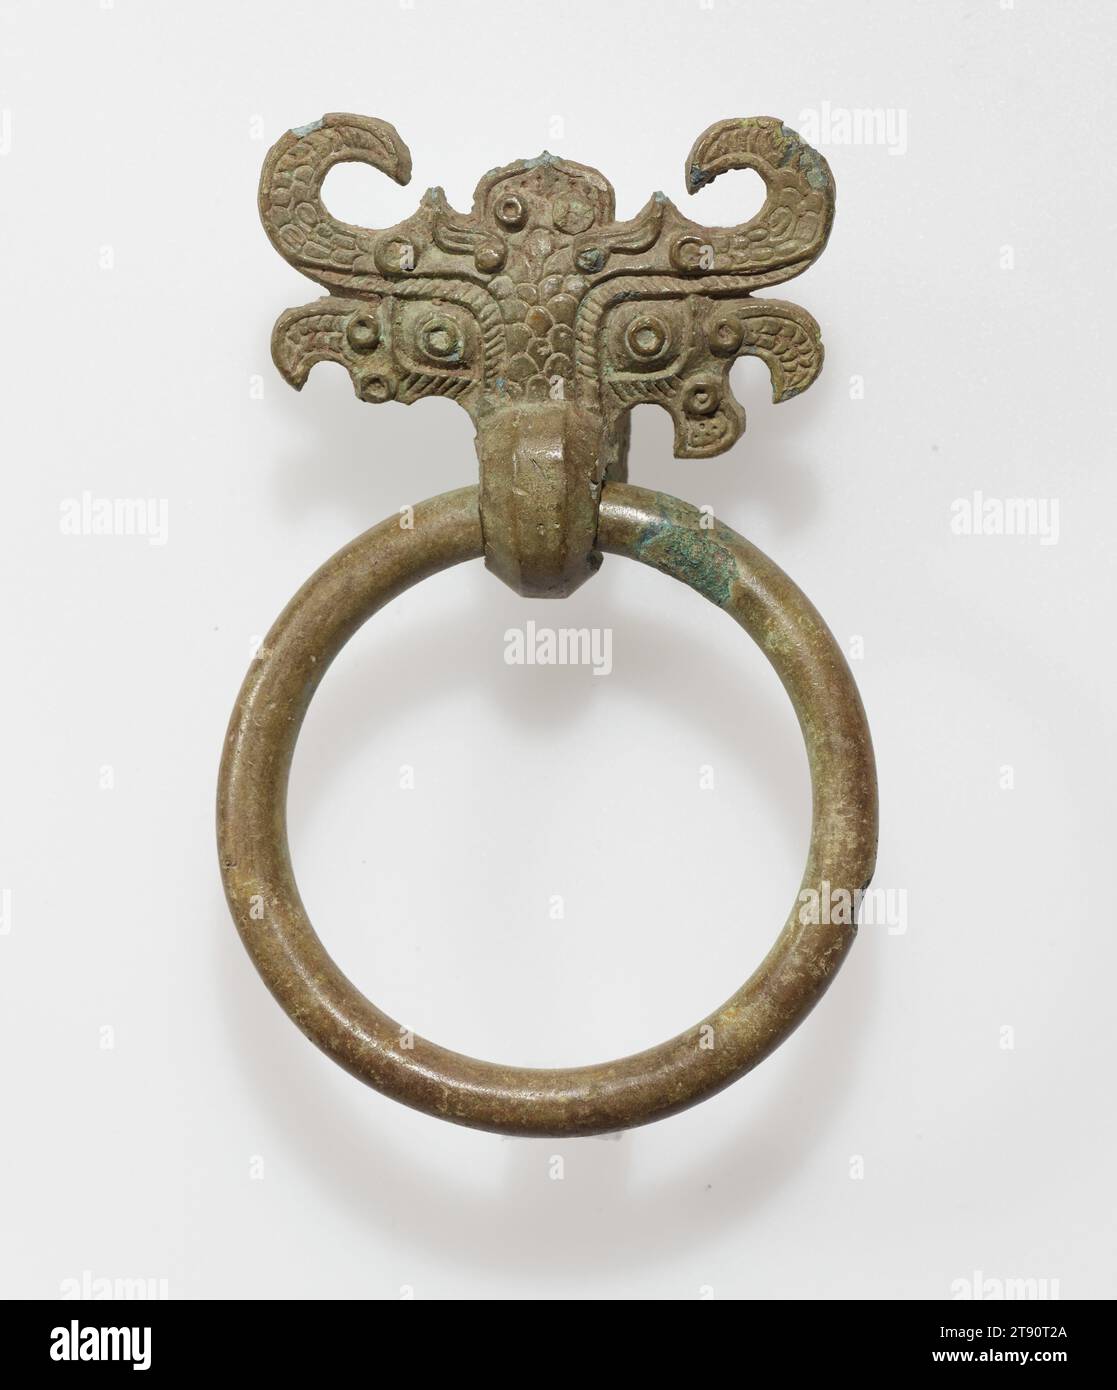 Masque avec poignée en anneau, un d'une paire, 5e-4e siècle av. J.-C., 4 × 2 5/8 × 1 1/4 po., 0,2 lb. (10,2 × 6,67 × 3,18 cm, 0,1 kg), Bronze, Chine, 5e-4e siècle av. J.-C. Banque D'Images